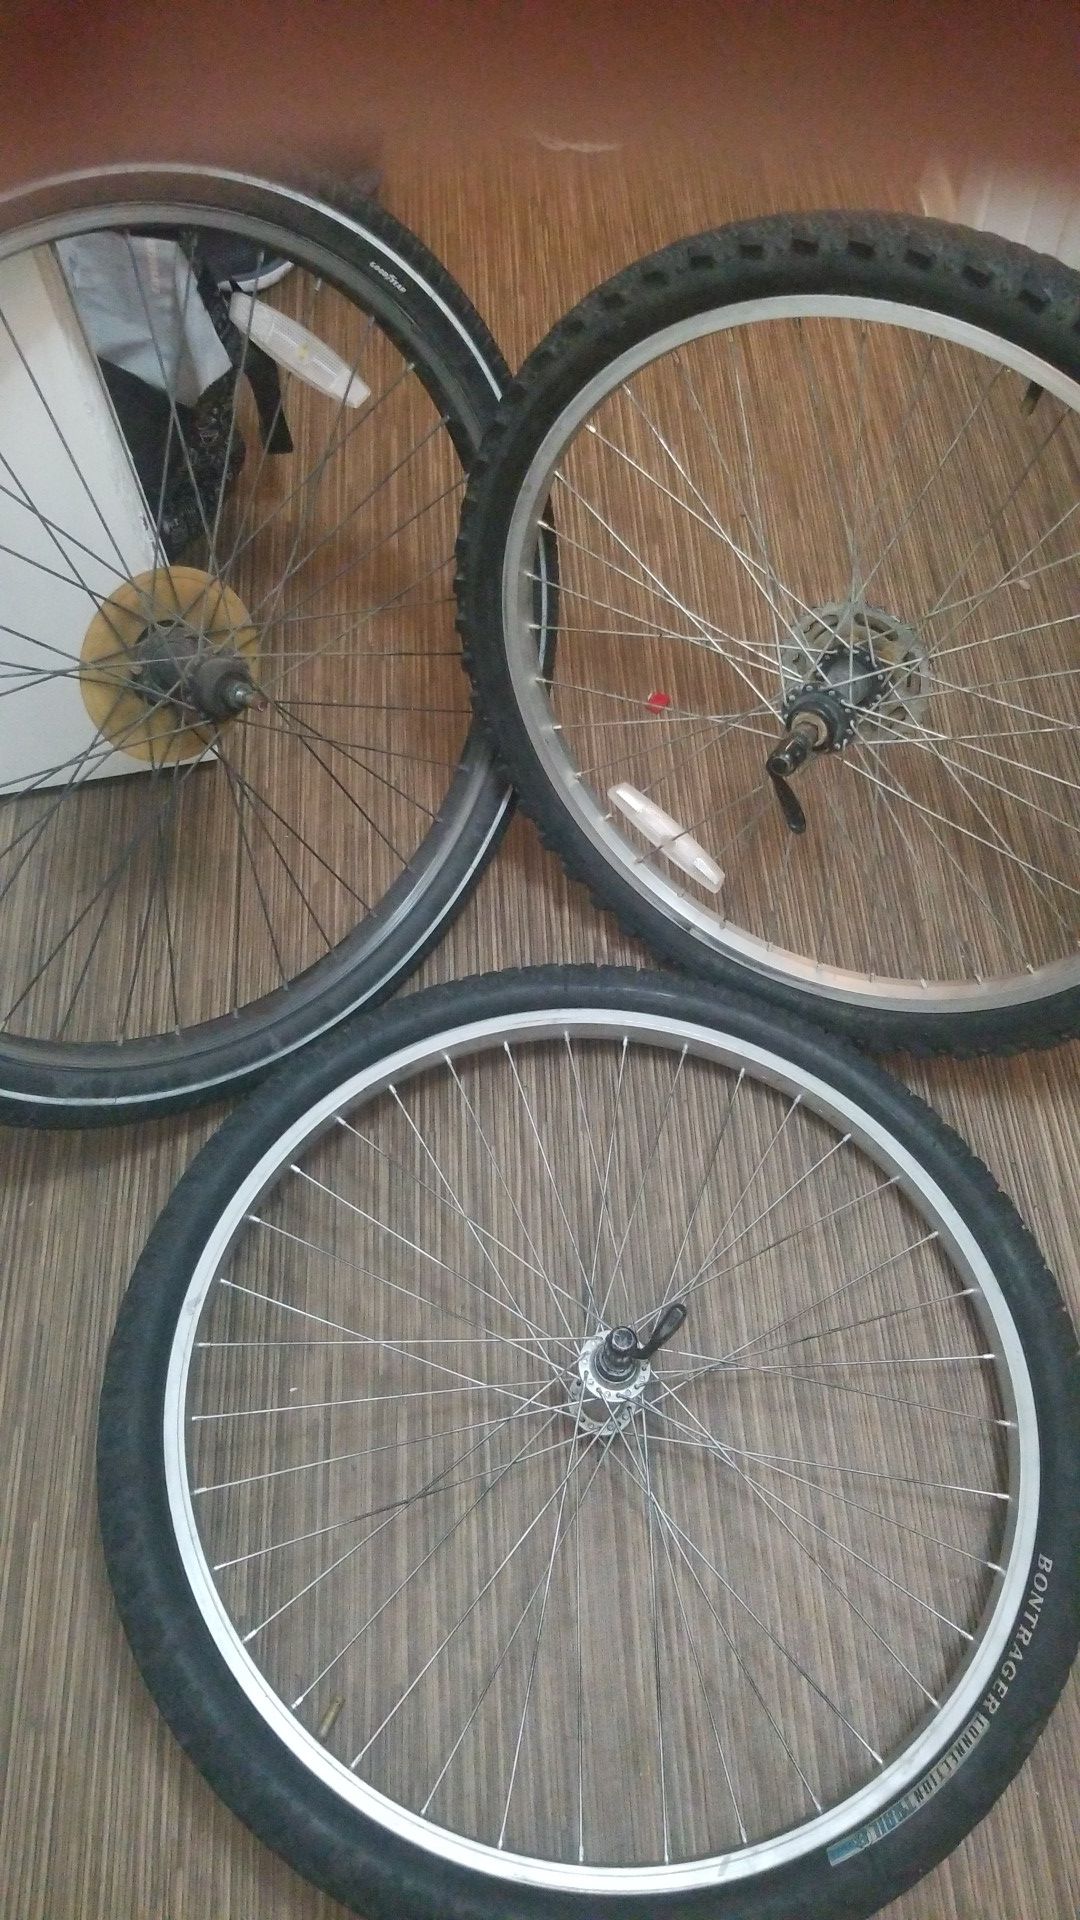 Bicycle wheels & tires.